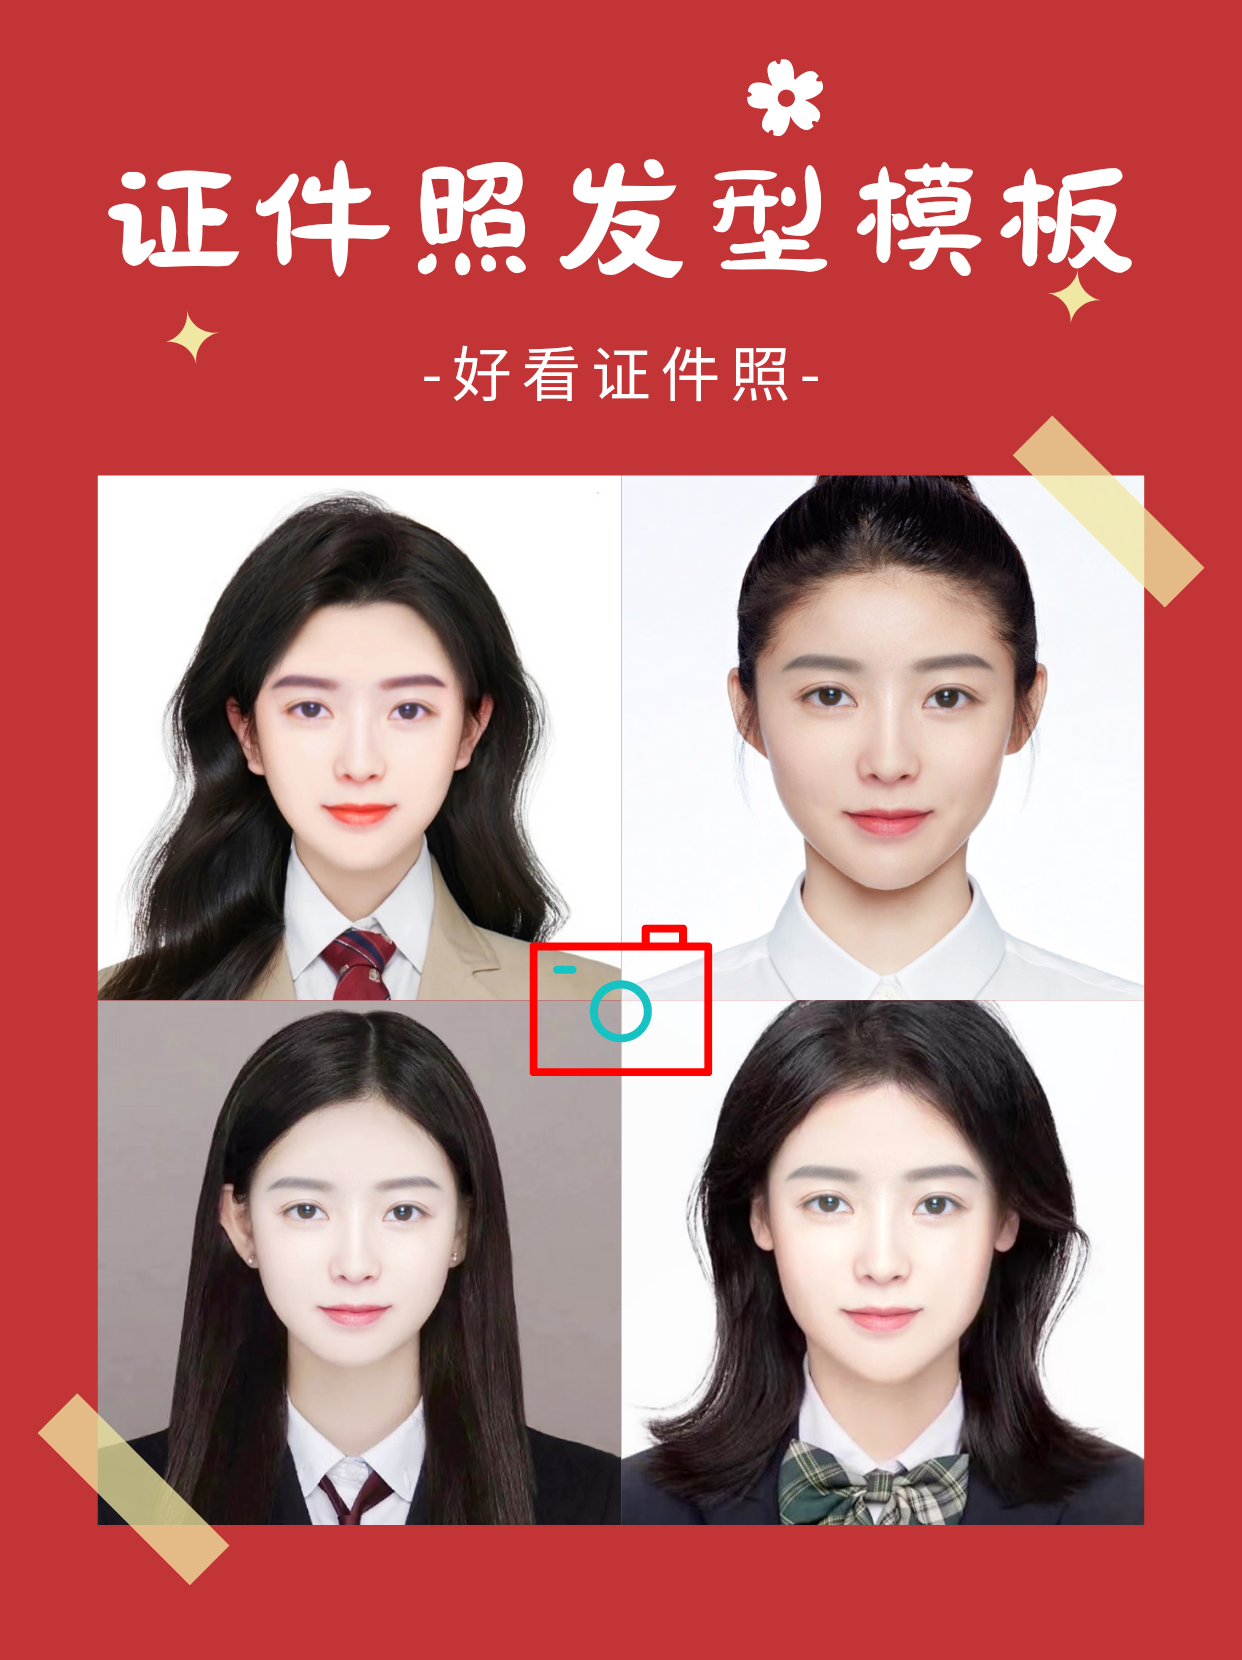 身份证(zheng)照片要求头发（身份证(zheng)照片要求头发发型）-悠嘻资讯网